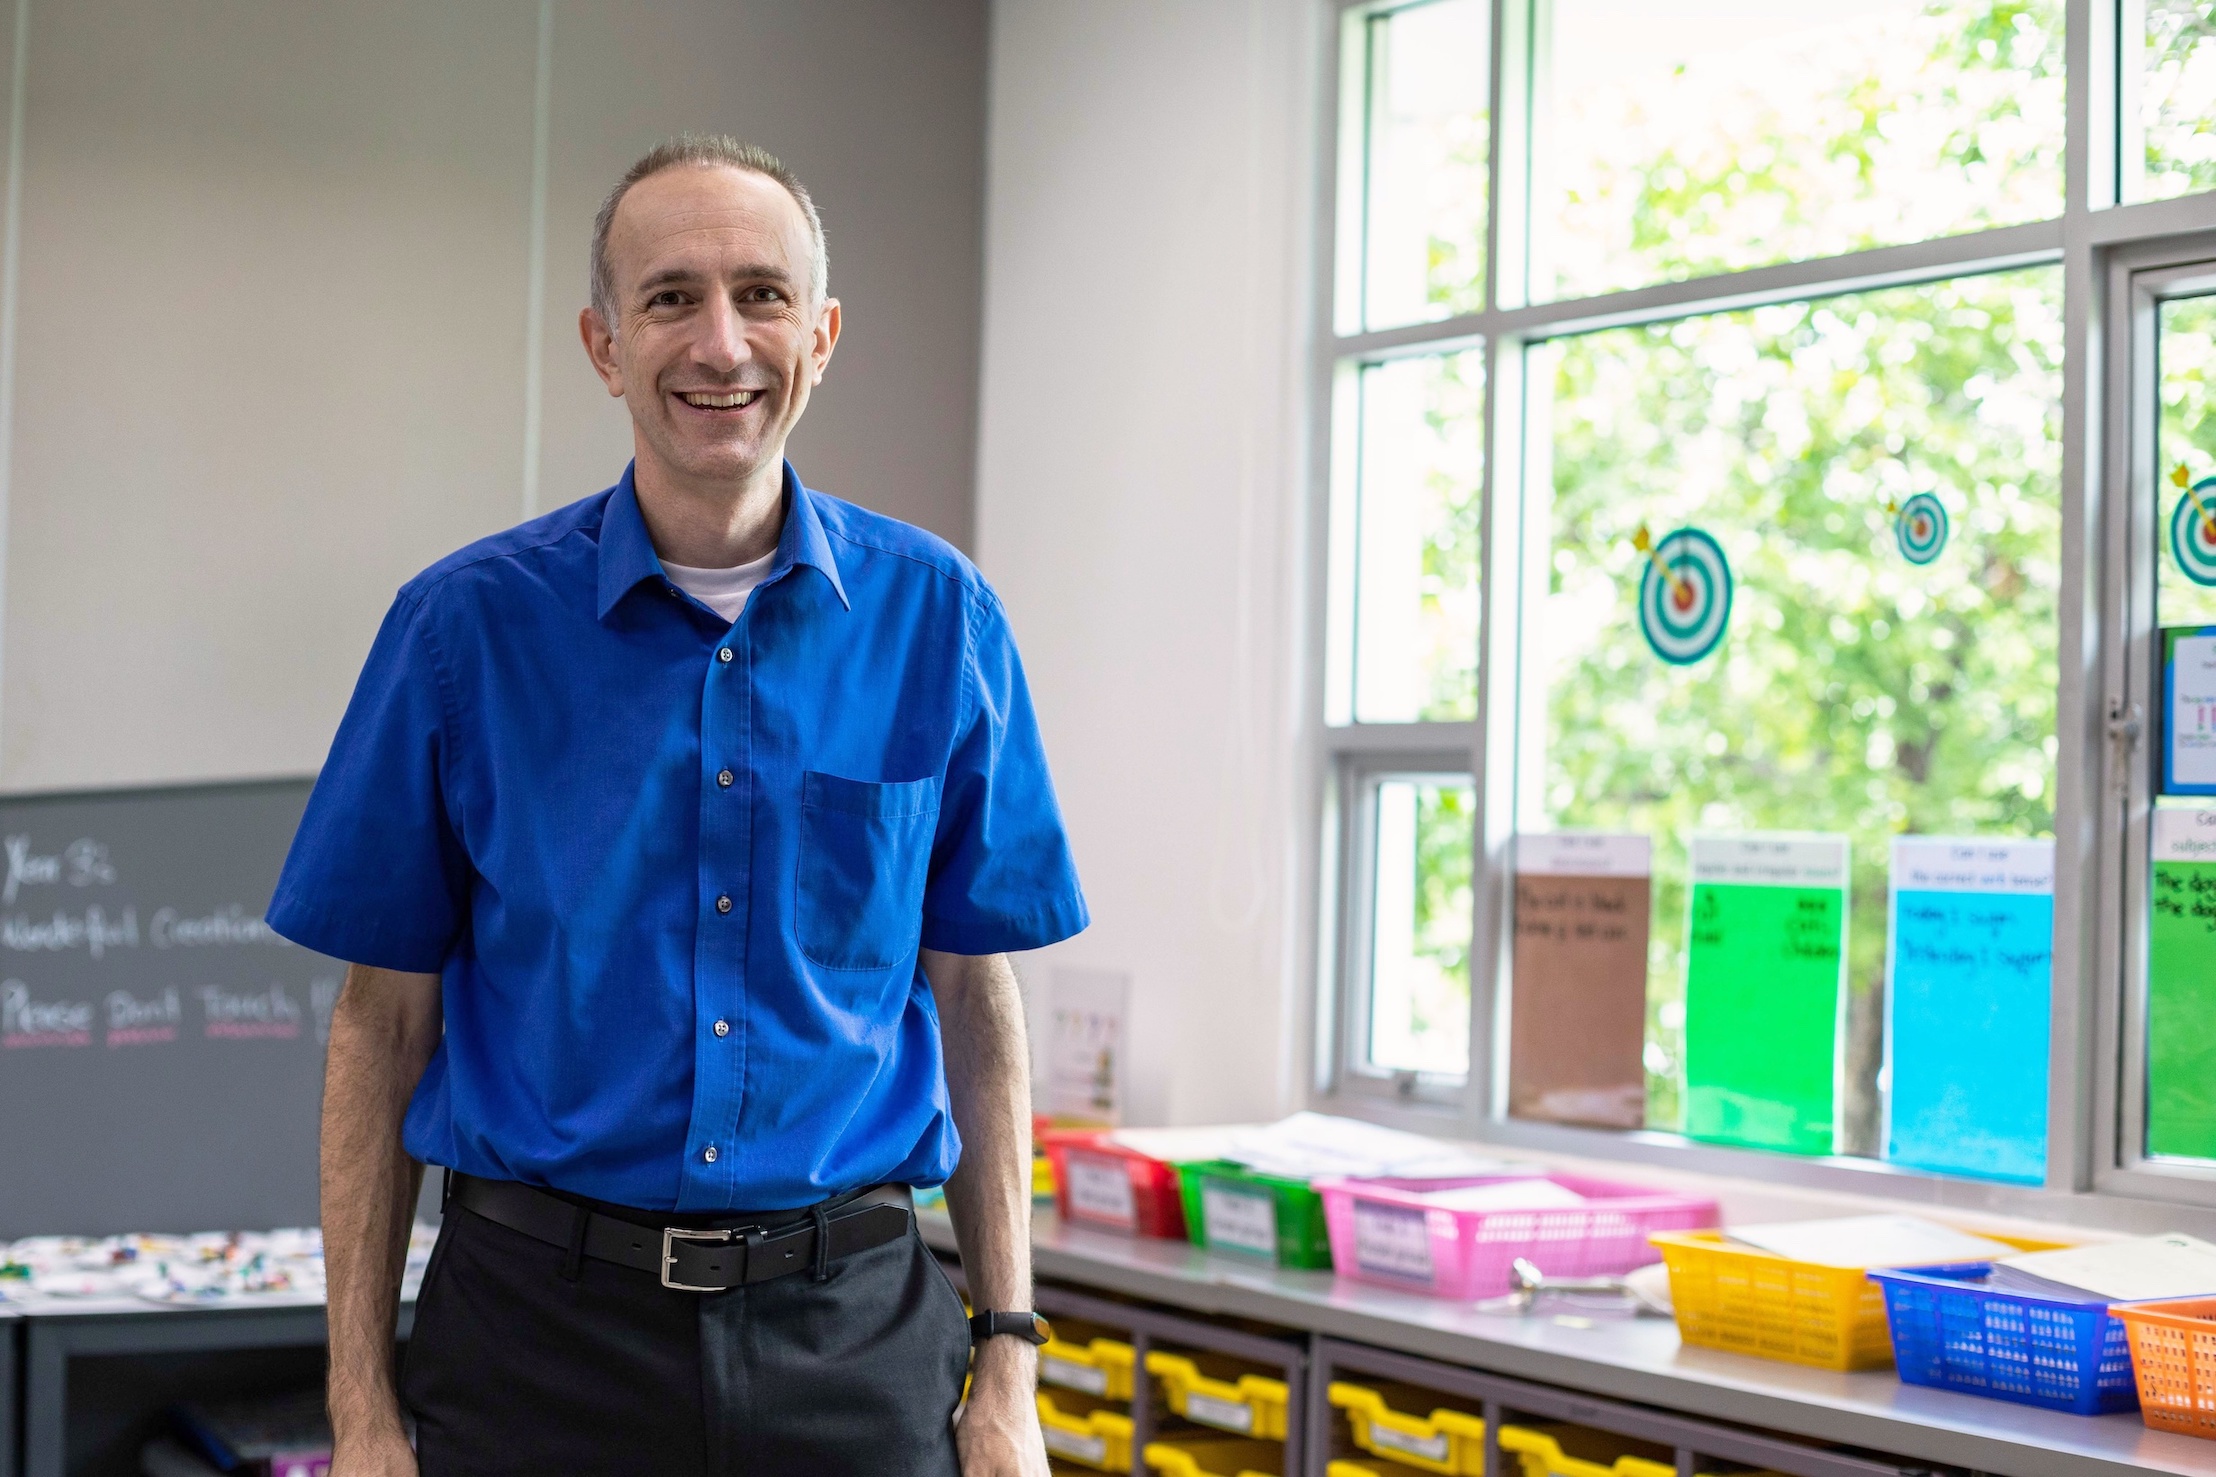 Meet the New Teacher: Mark Stride